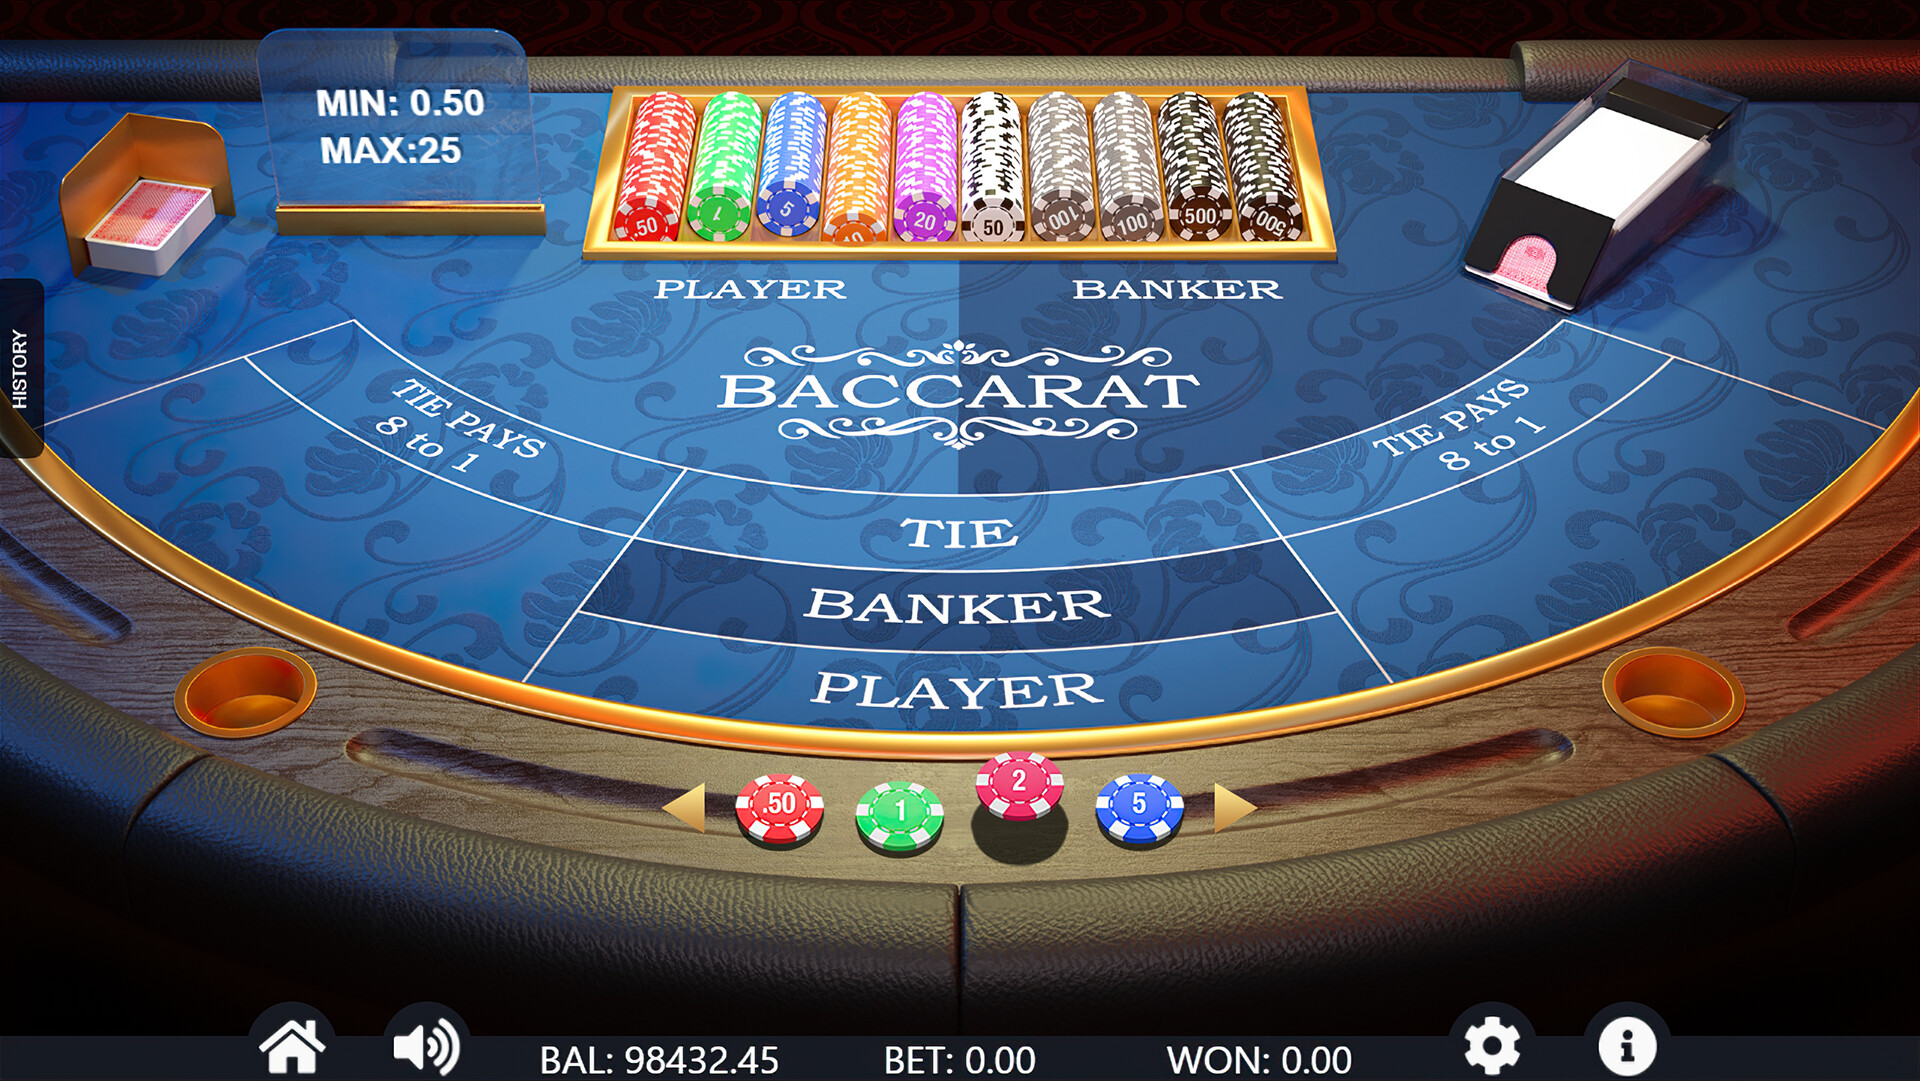 Rosyjski poker Zrzut ekranu